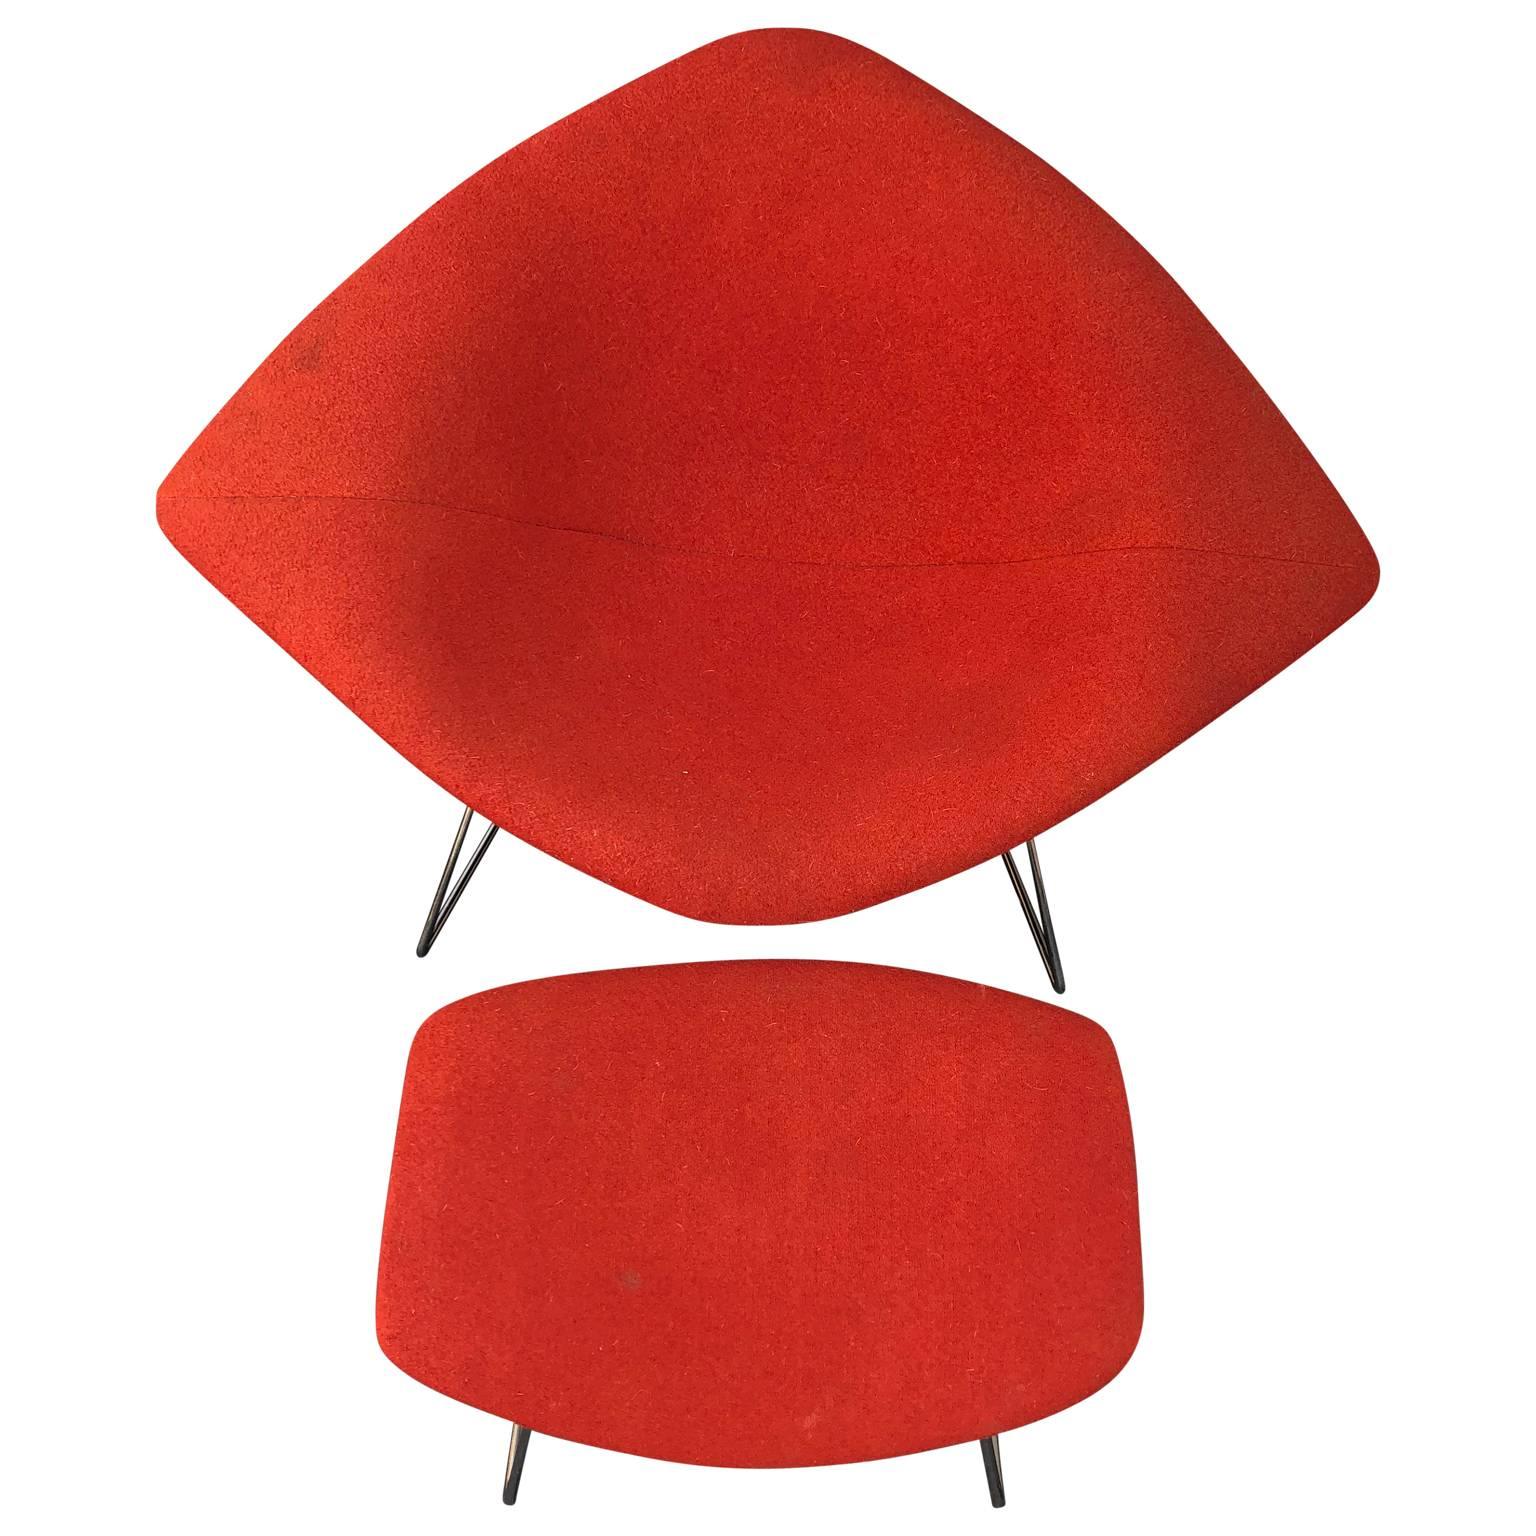 Großer Diamantstuhl aus Chrom, entworfen von Harry Bertoia für Knoll im Jahr 1952. 
Der Stuhl  und Ottomane haben den originalen roten Stoffbezug. Die Drahtstühle von Harry Bertoia gehören zu den anerkanntesten Errungenschaften des Mid-Century